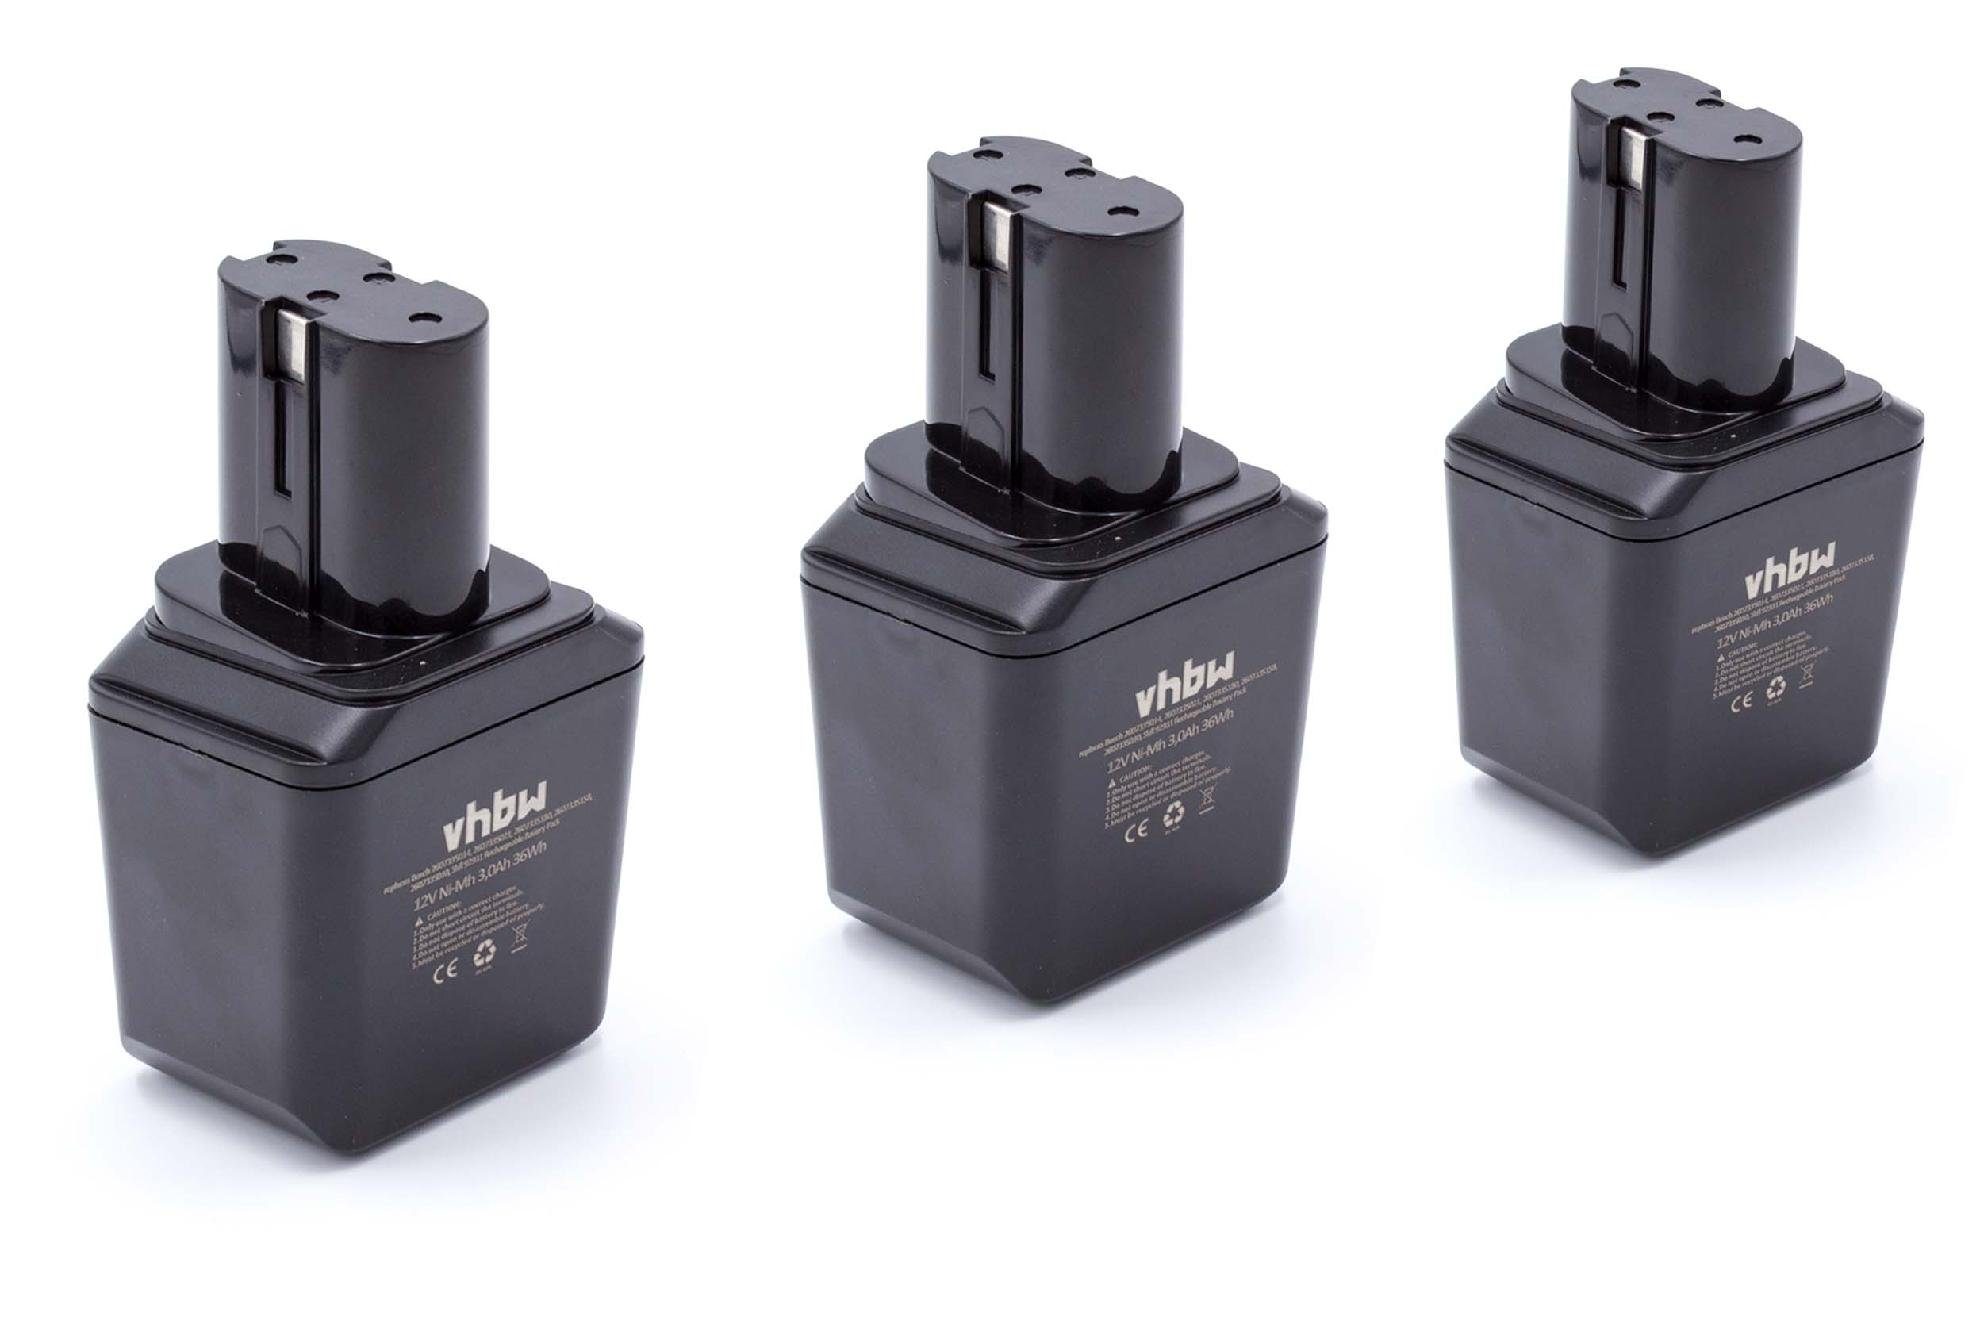 Generation mit Bosch 12Volt PBM-Serie 3000 NiMH) Knolle passend mAh Kompatibel für Akku mit Elektrowerkzeug vhbw (3000mAh, Akku 12V, 1.